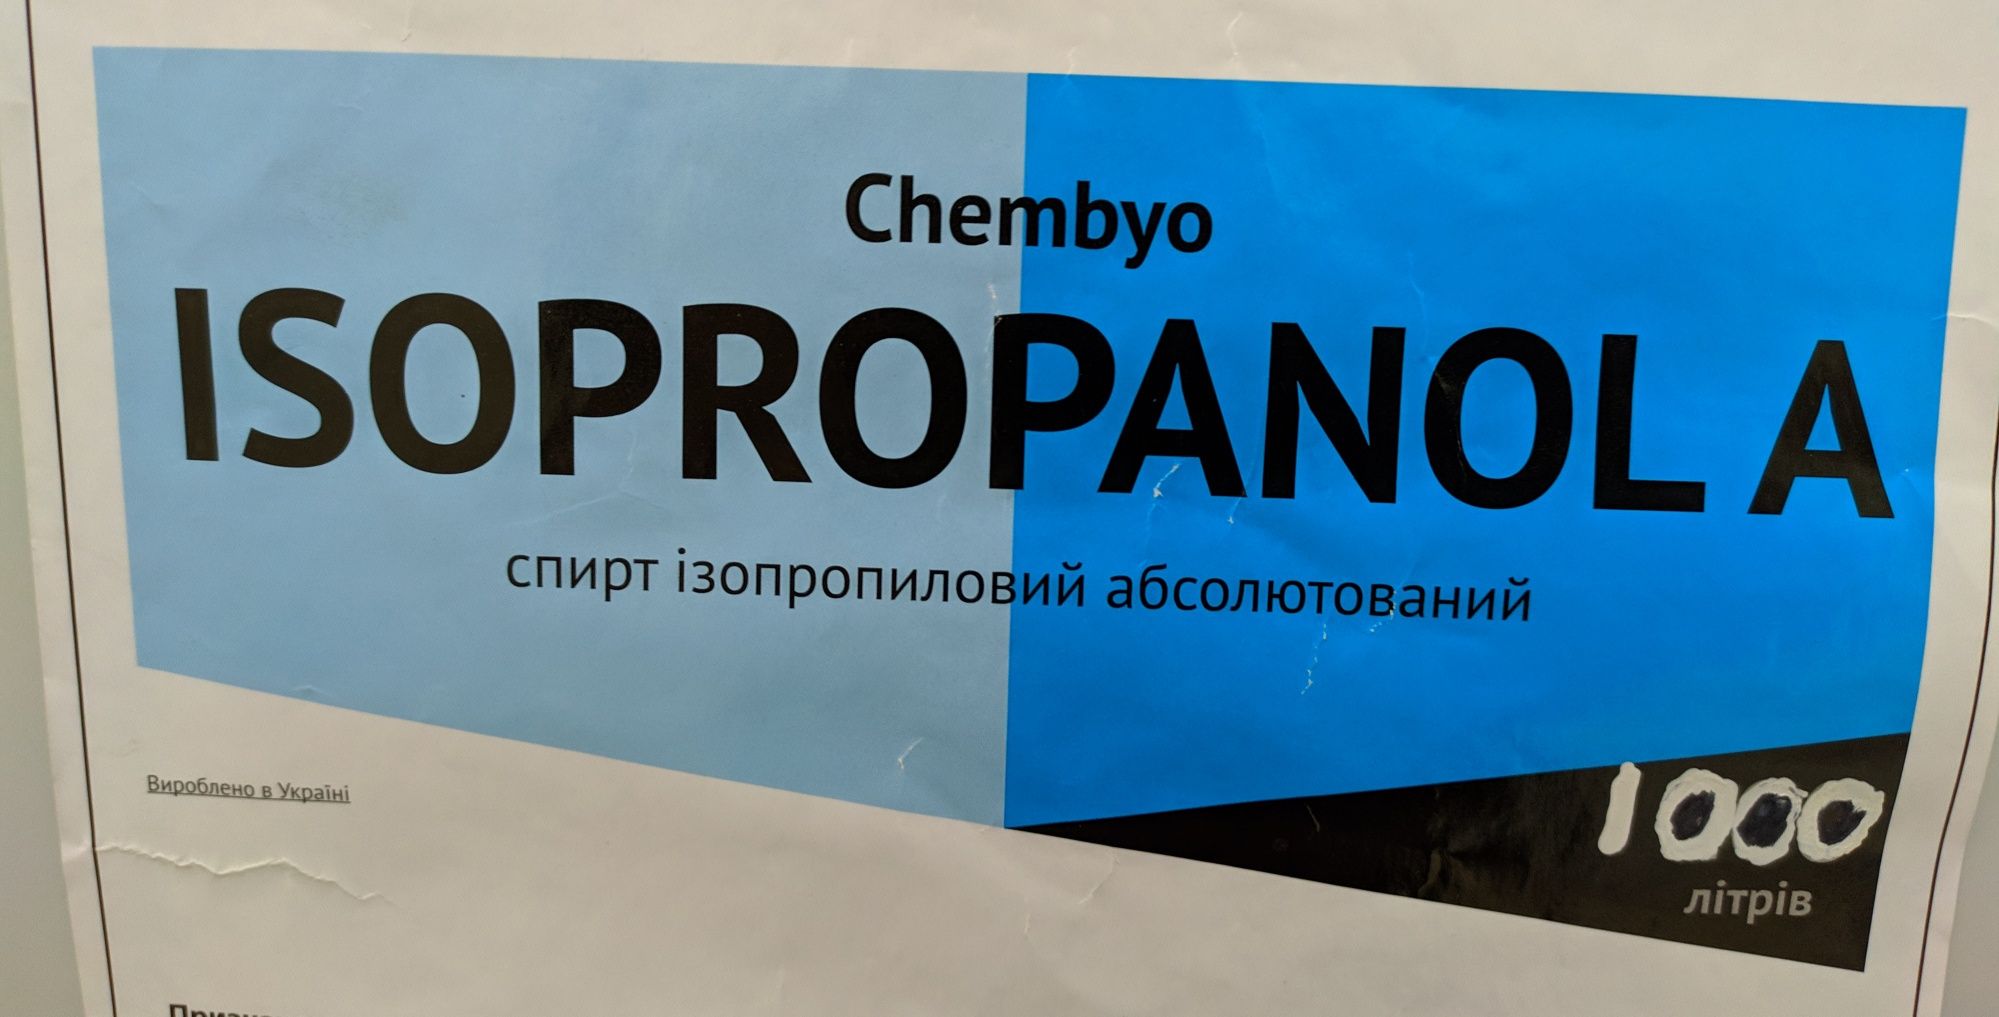 5 литров  Изопропиловый спирт Isopropanol